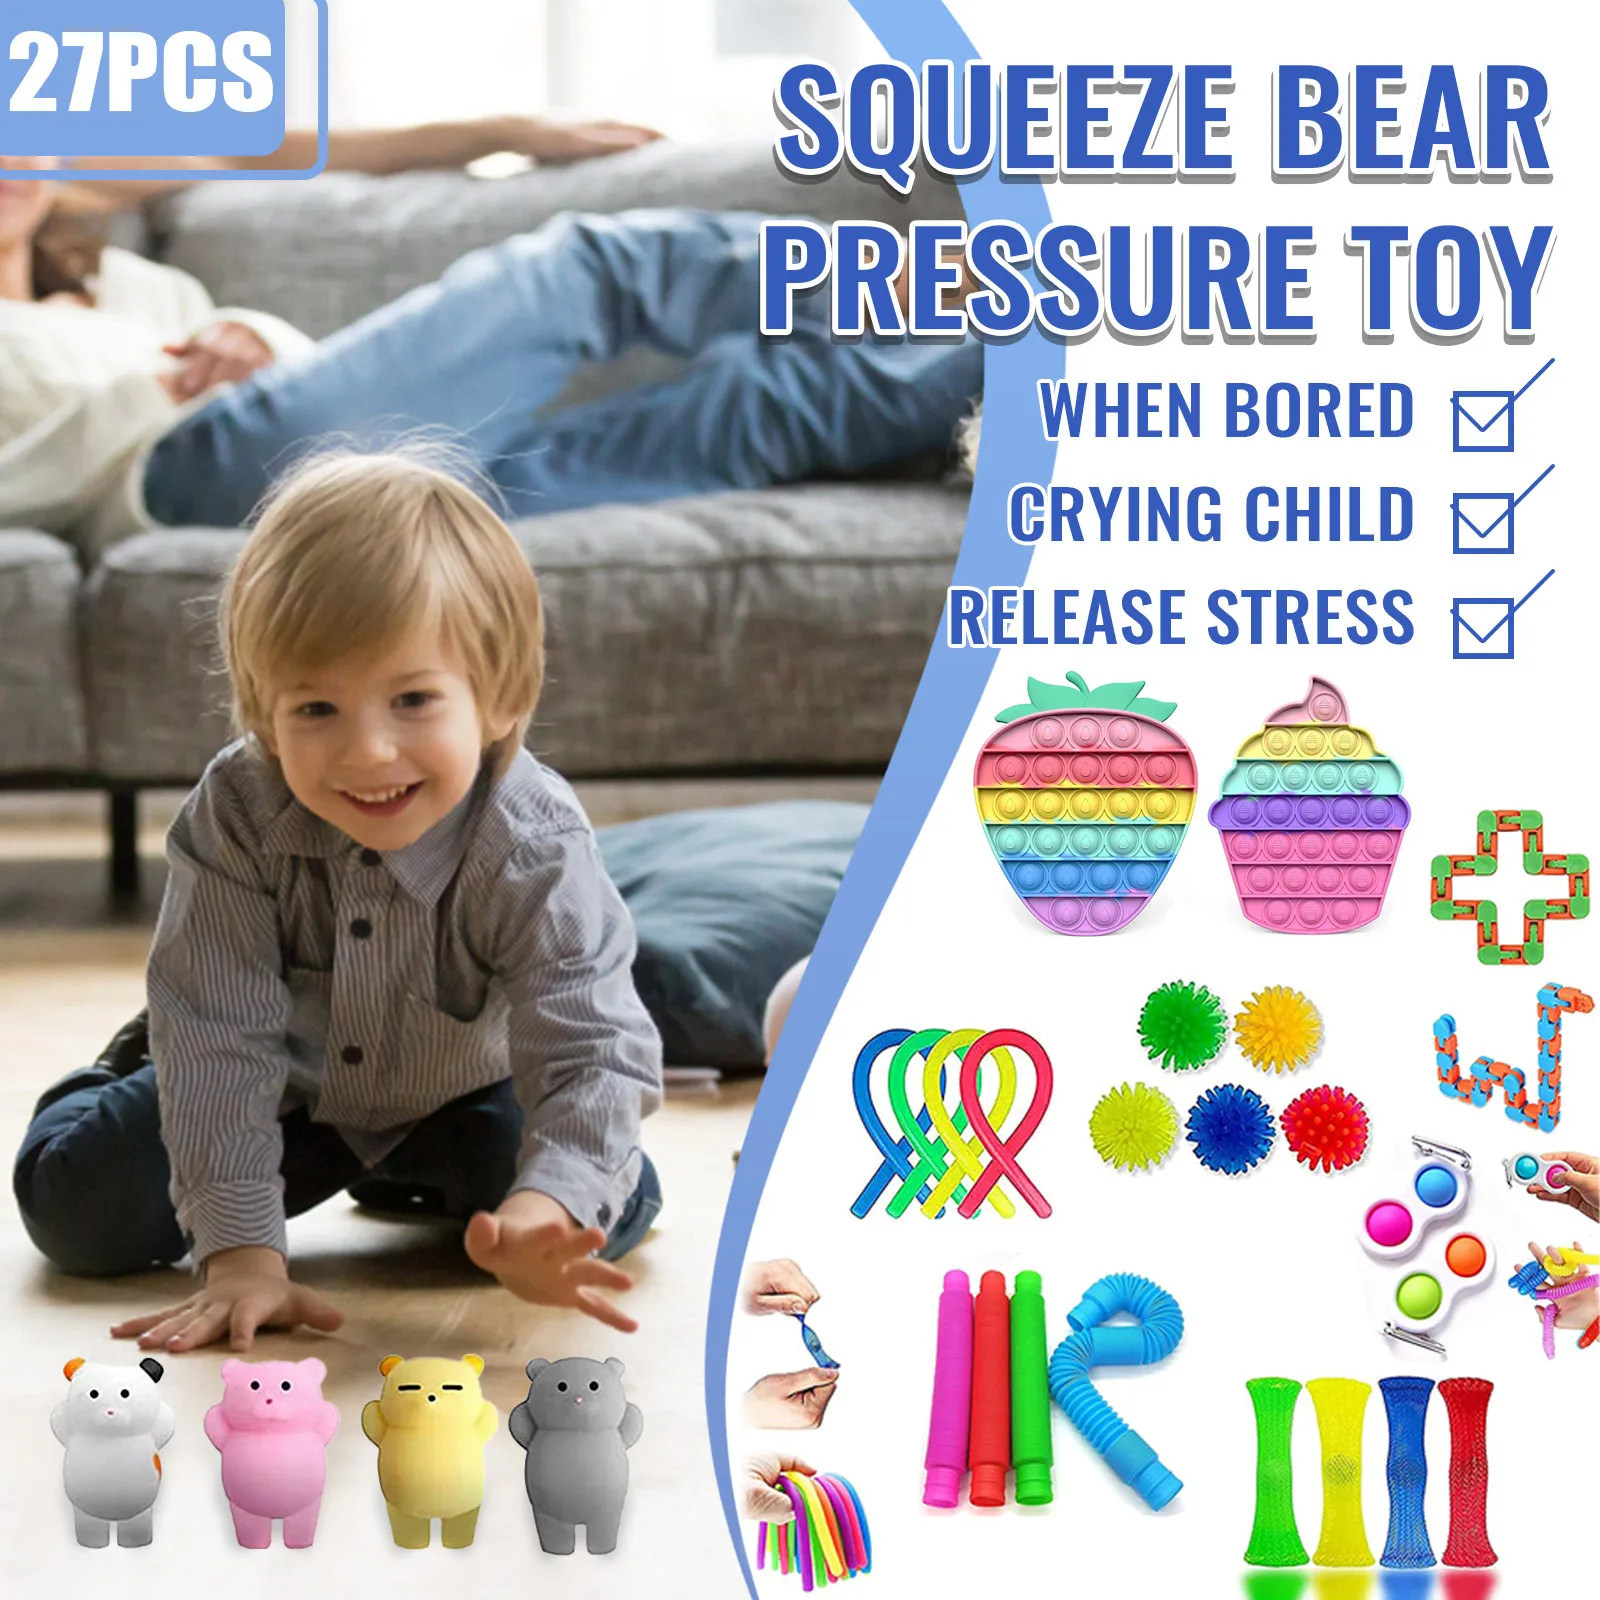 

Сжимаемая игрушка с пузырьками, игрушки-антистресс для детей и взрослых, упаковка игрушек ручной работы для облегчения беспокойства